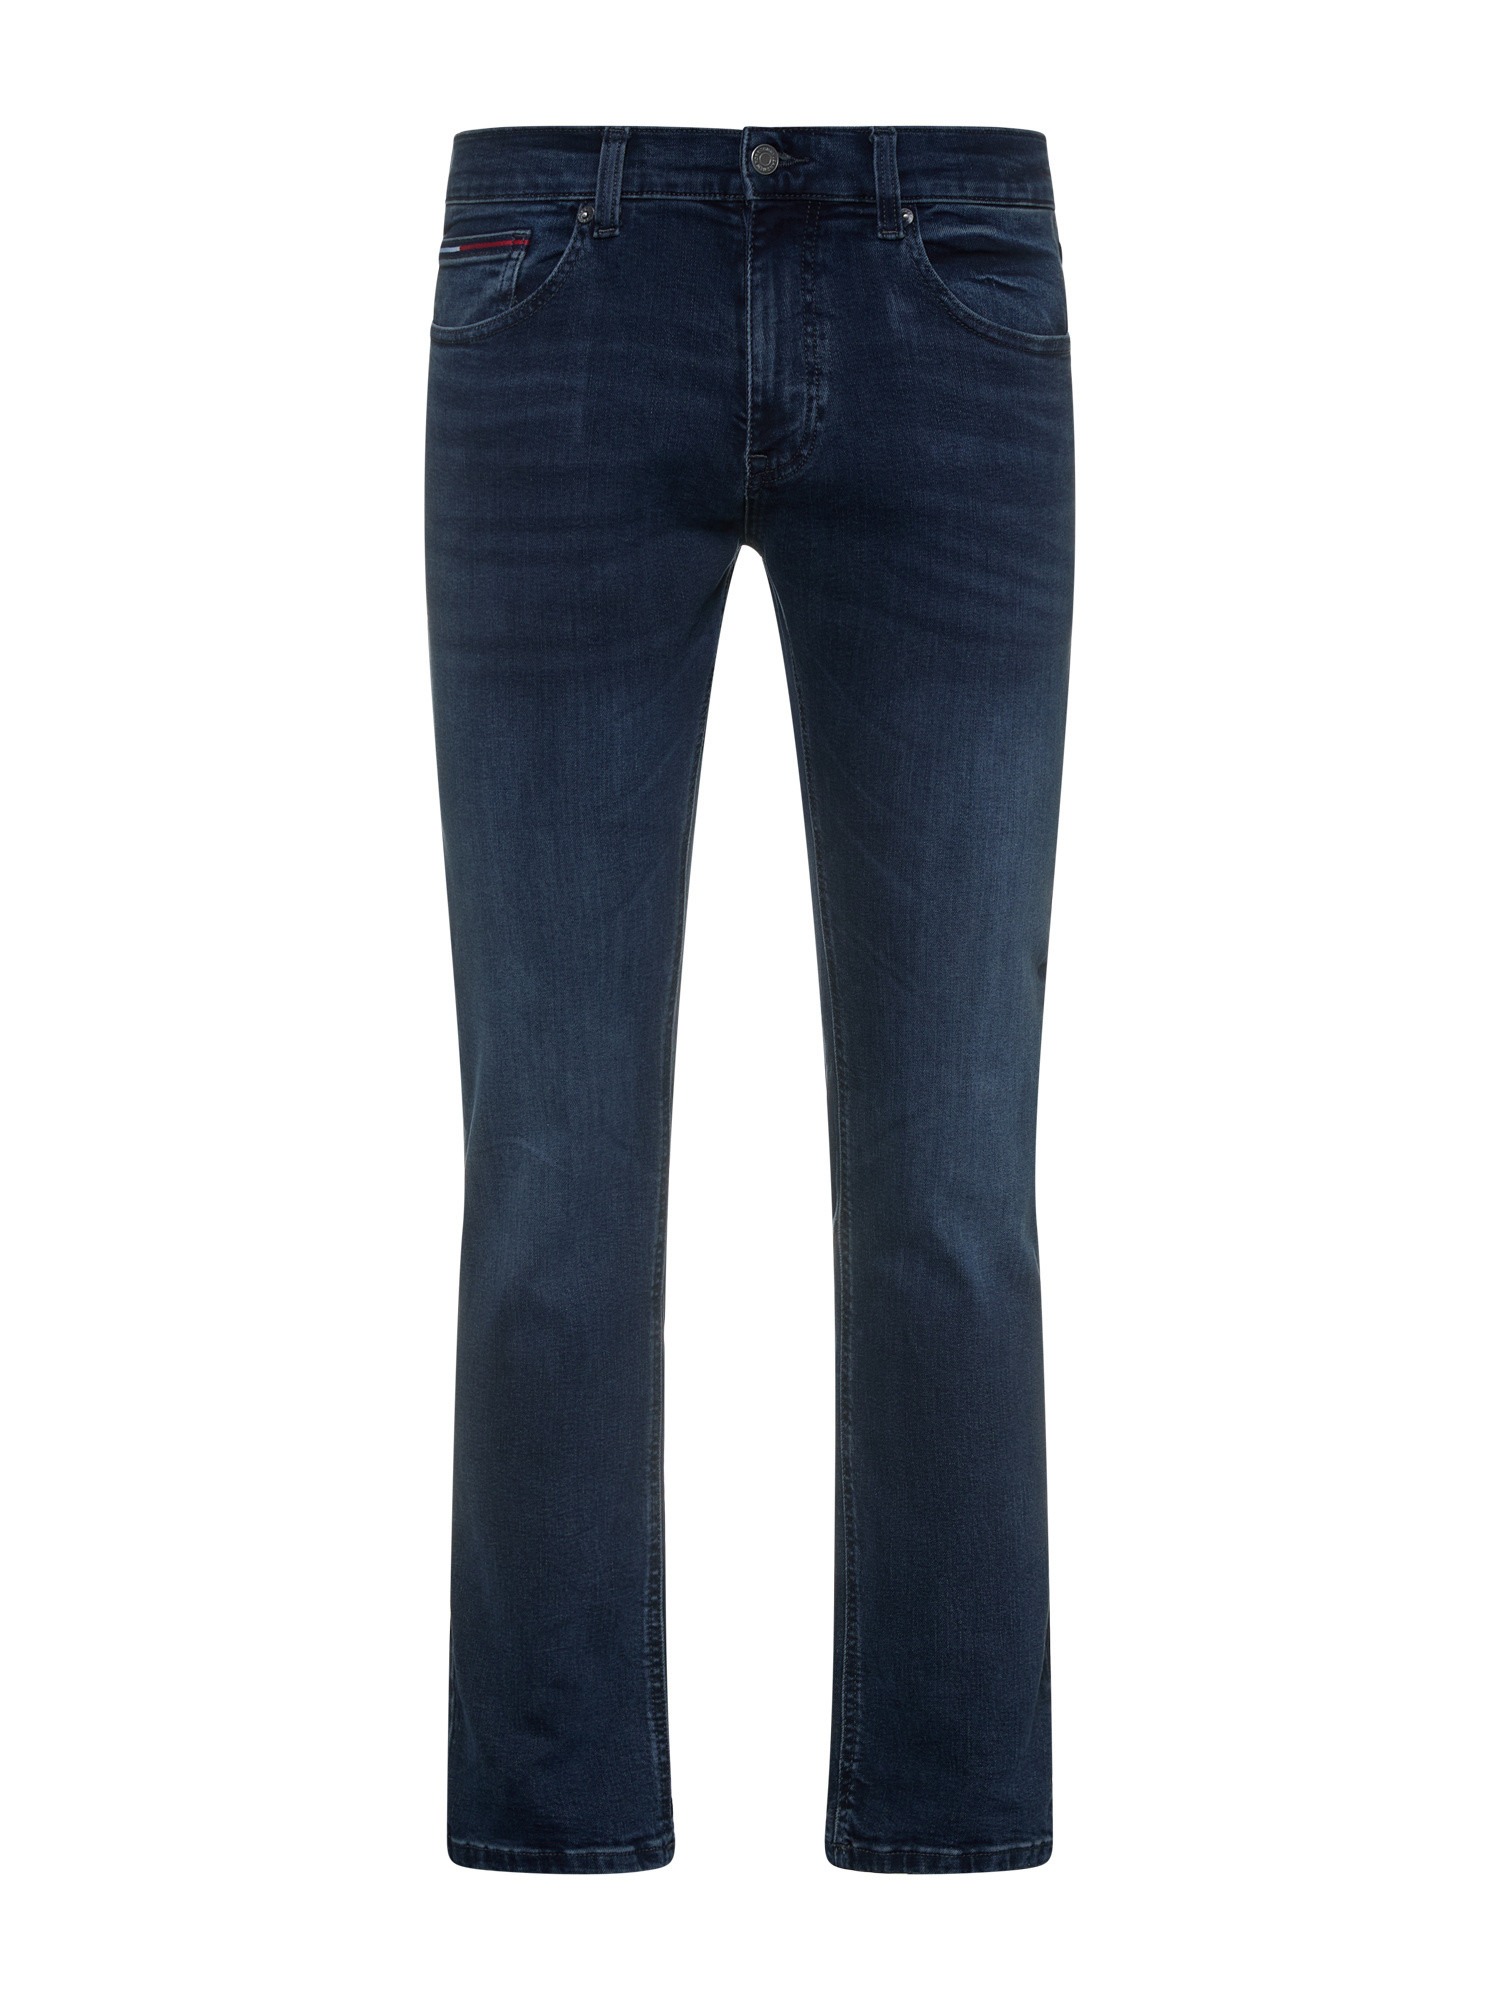 Tommy Jeans - Five pocket jeans, Denim, large image number 0